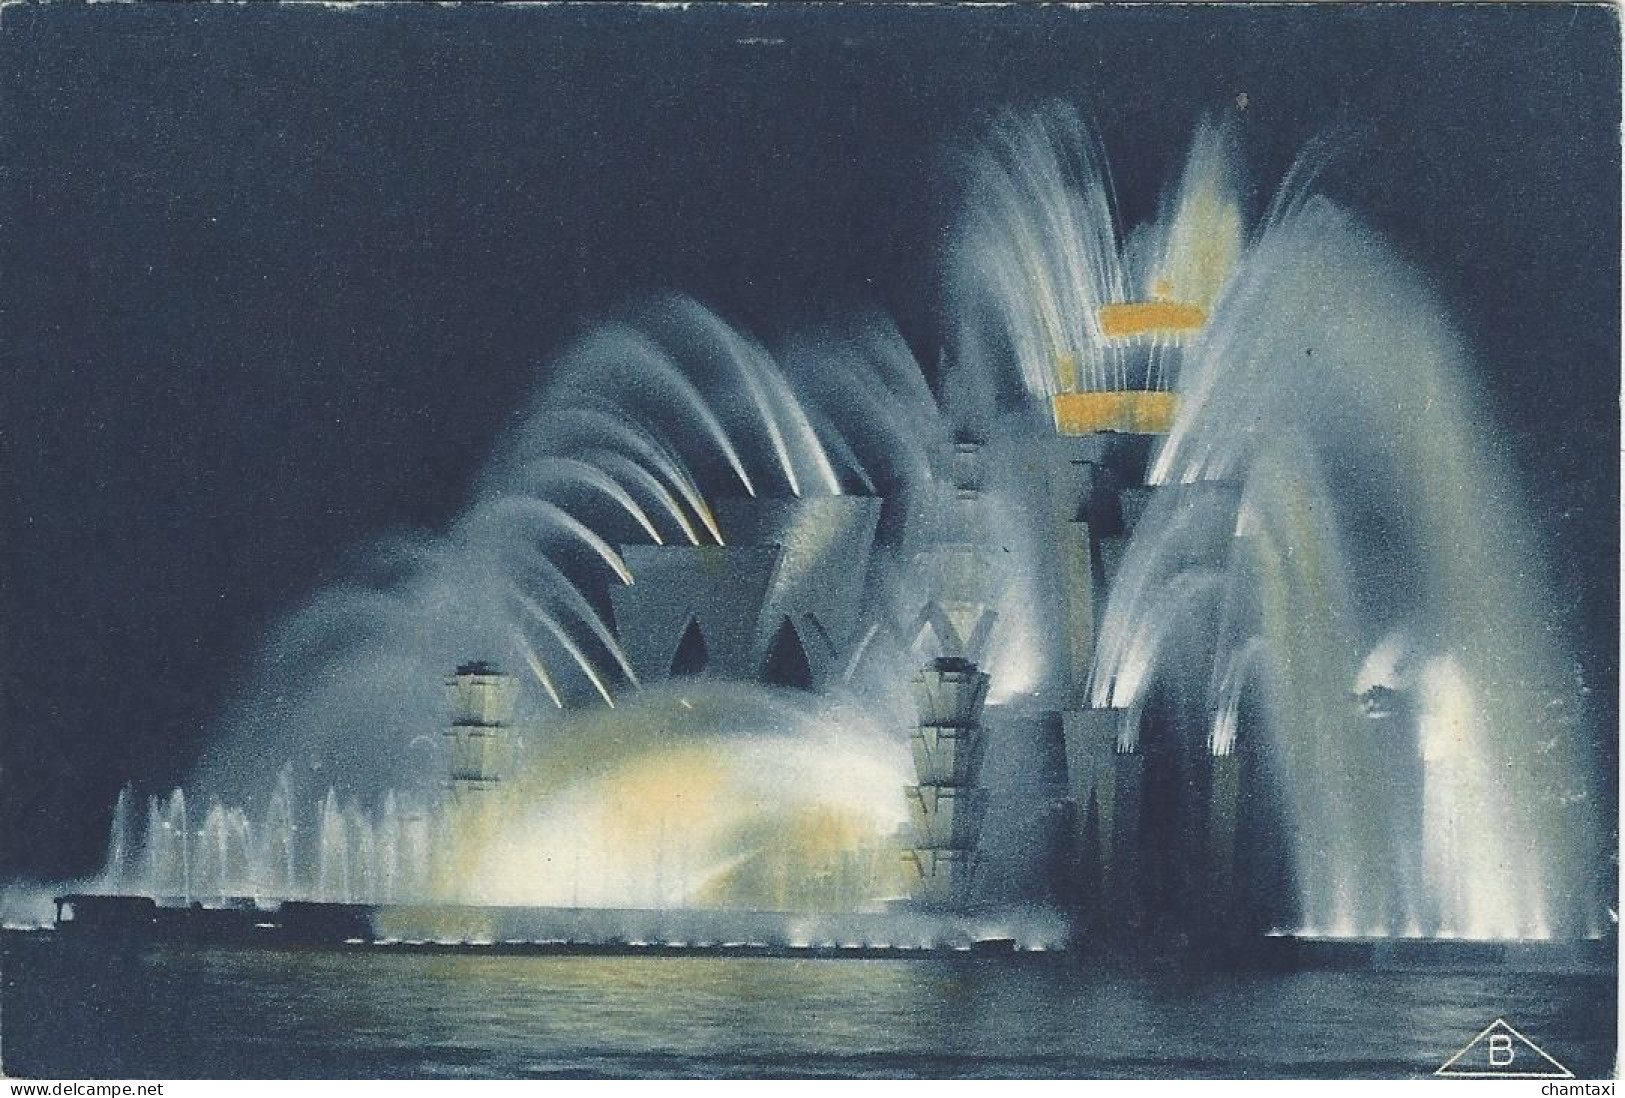 75 PARIS EXPOSITION  COLONIALE INTERNATIONALE 1931 THEATRE D'EAU VUE DE NUIT ARCHITECTES GRANET ET EXPERT Edi BRAUN 356 - Exposiciones